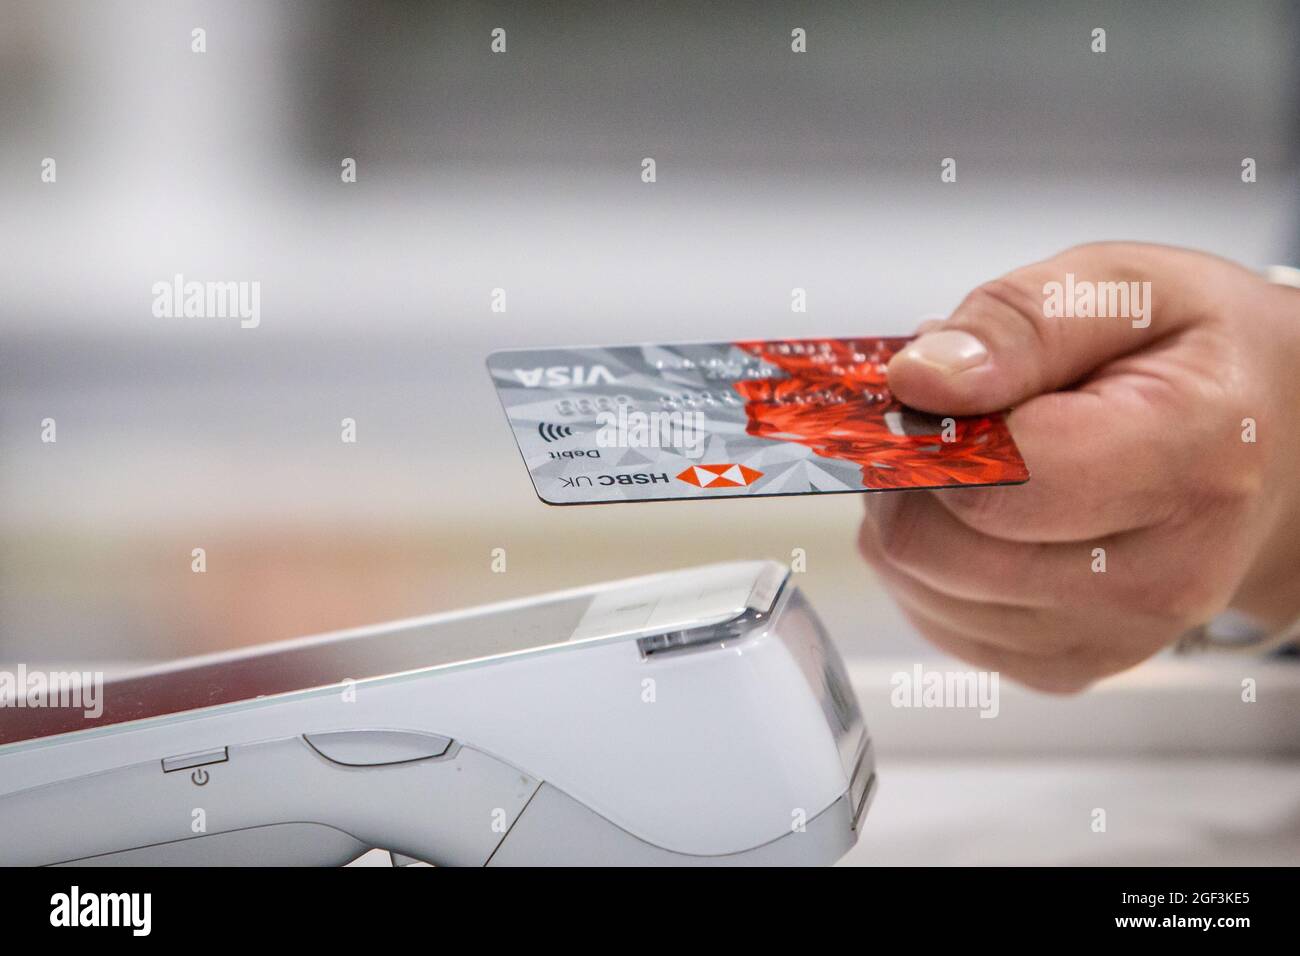 Primer plano de una tarjeta de débito bancaria que se utiliza para comprar utilizando sin contacto. Foto de stock